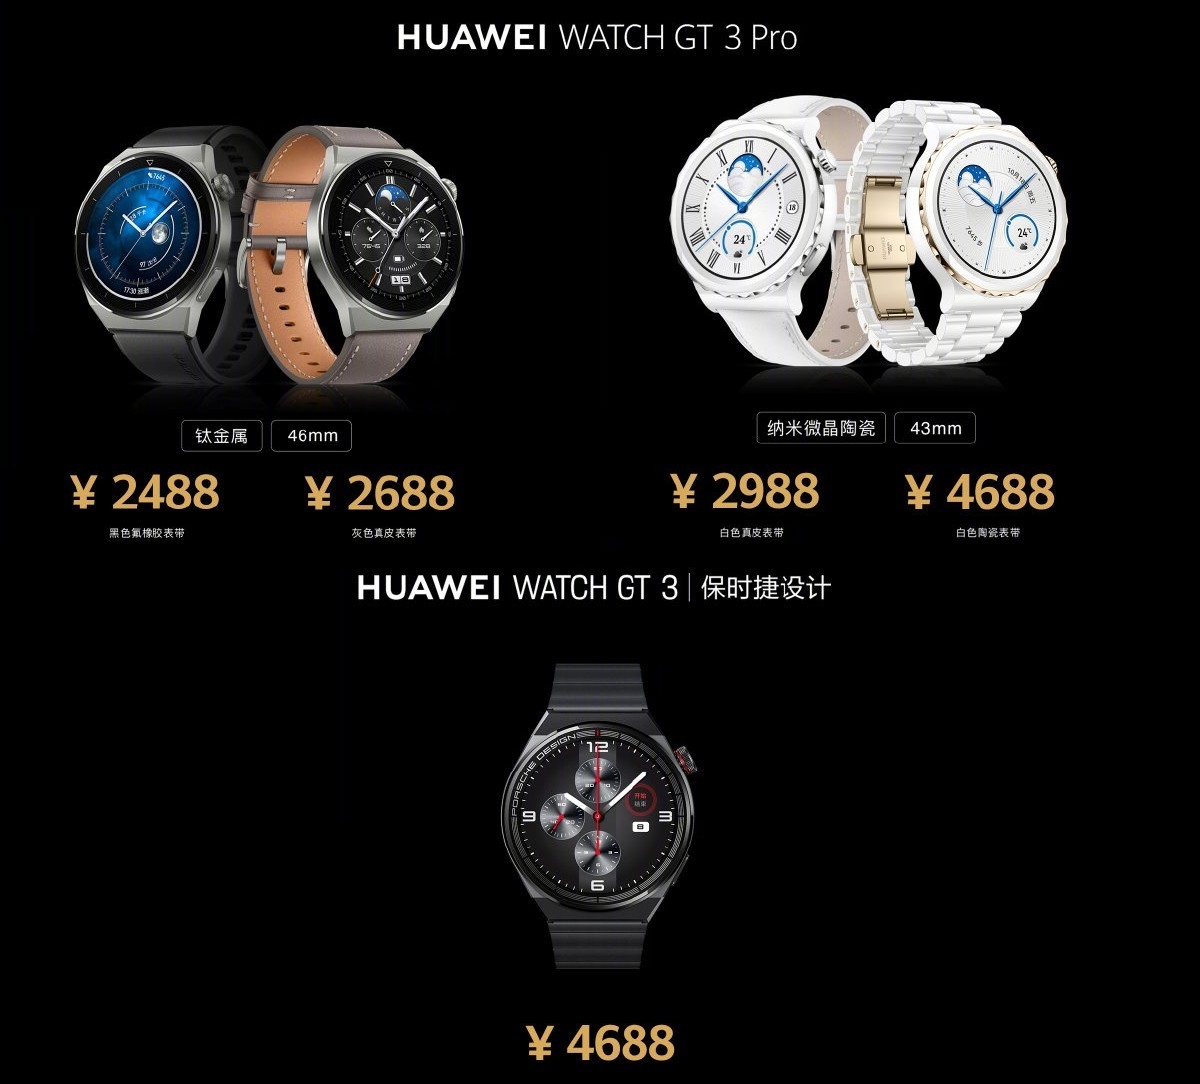 هواوي تطلق الساعة الذكية Huawei Watch GT 3 Pro  في السوق العالمية مع100  وضع رياضي.. المواصفات والسعر